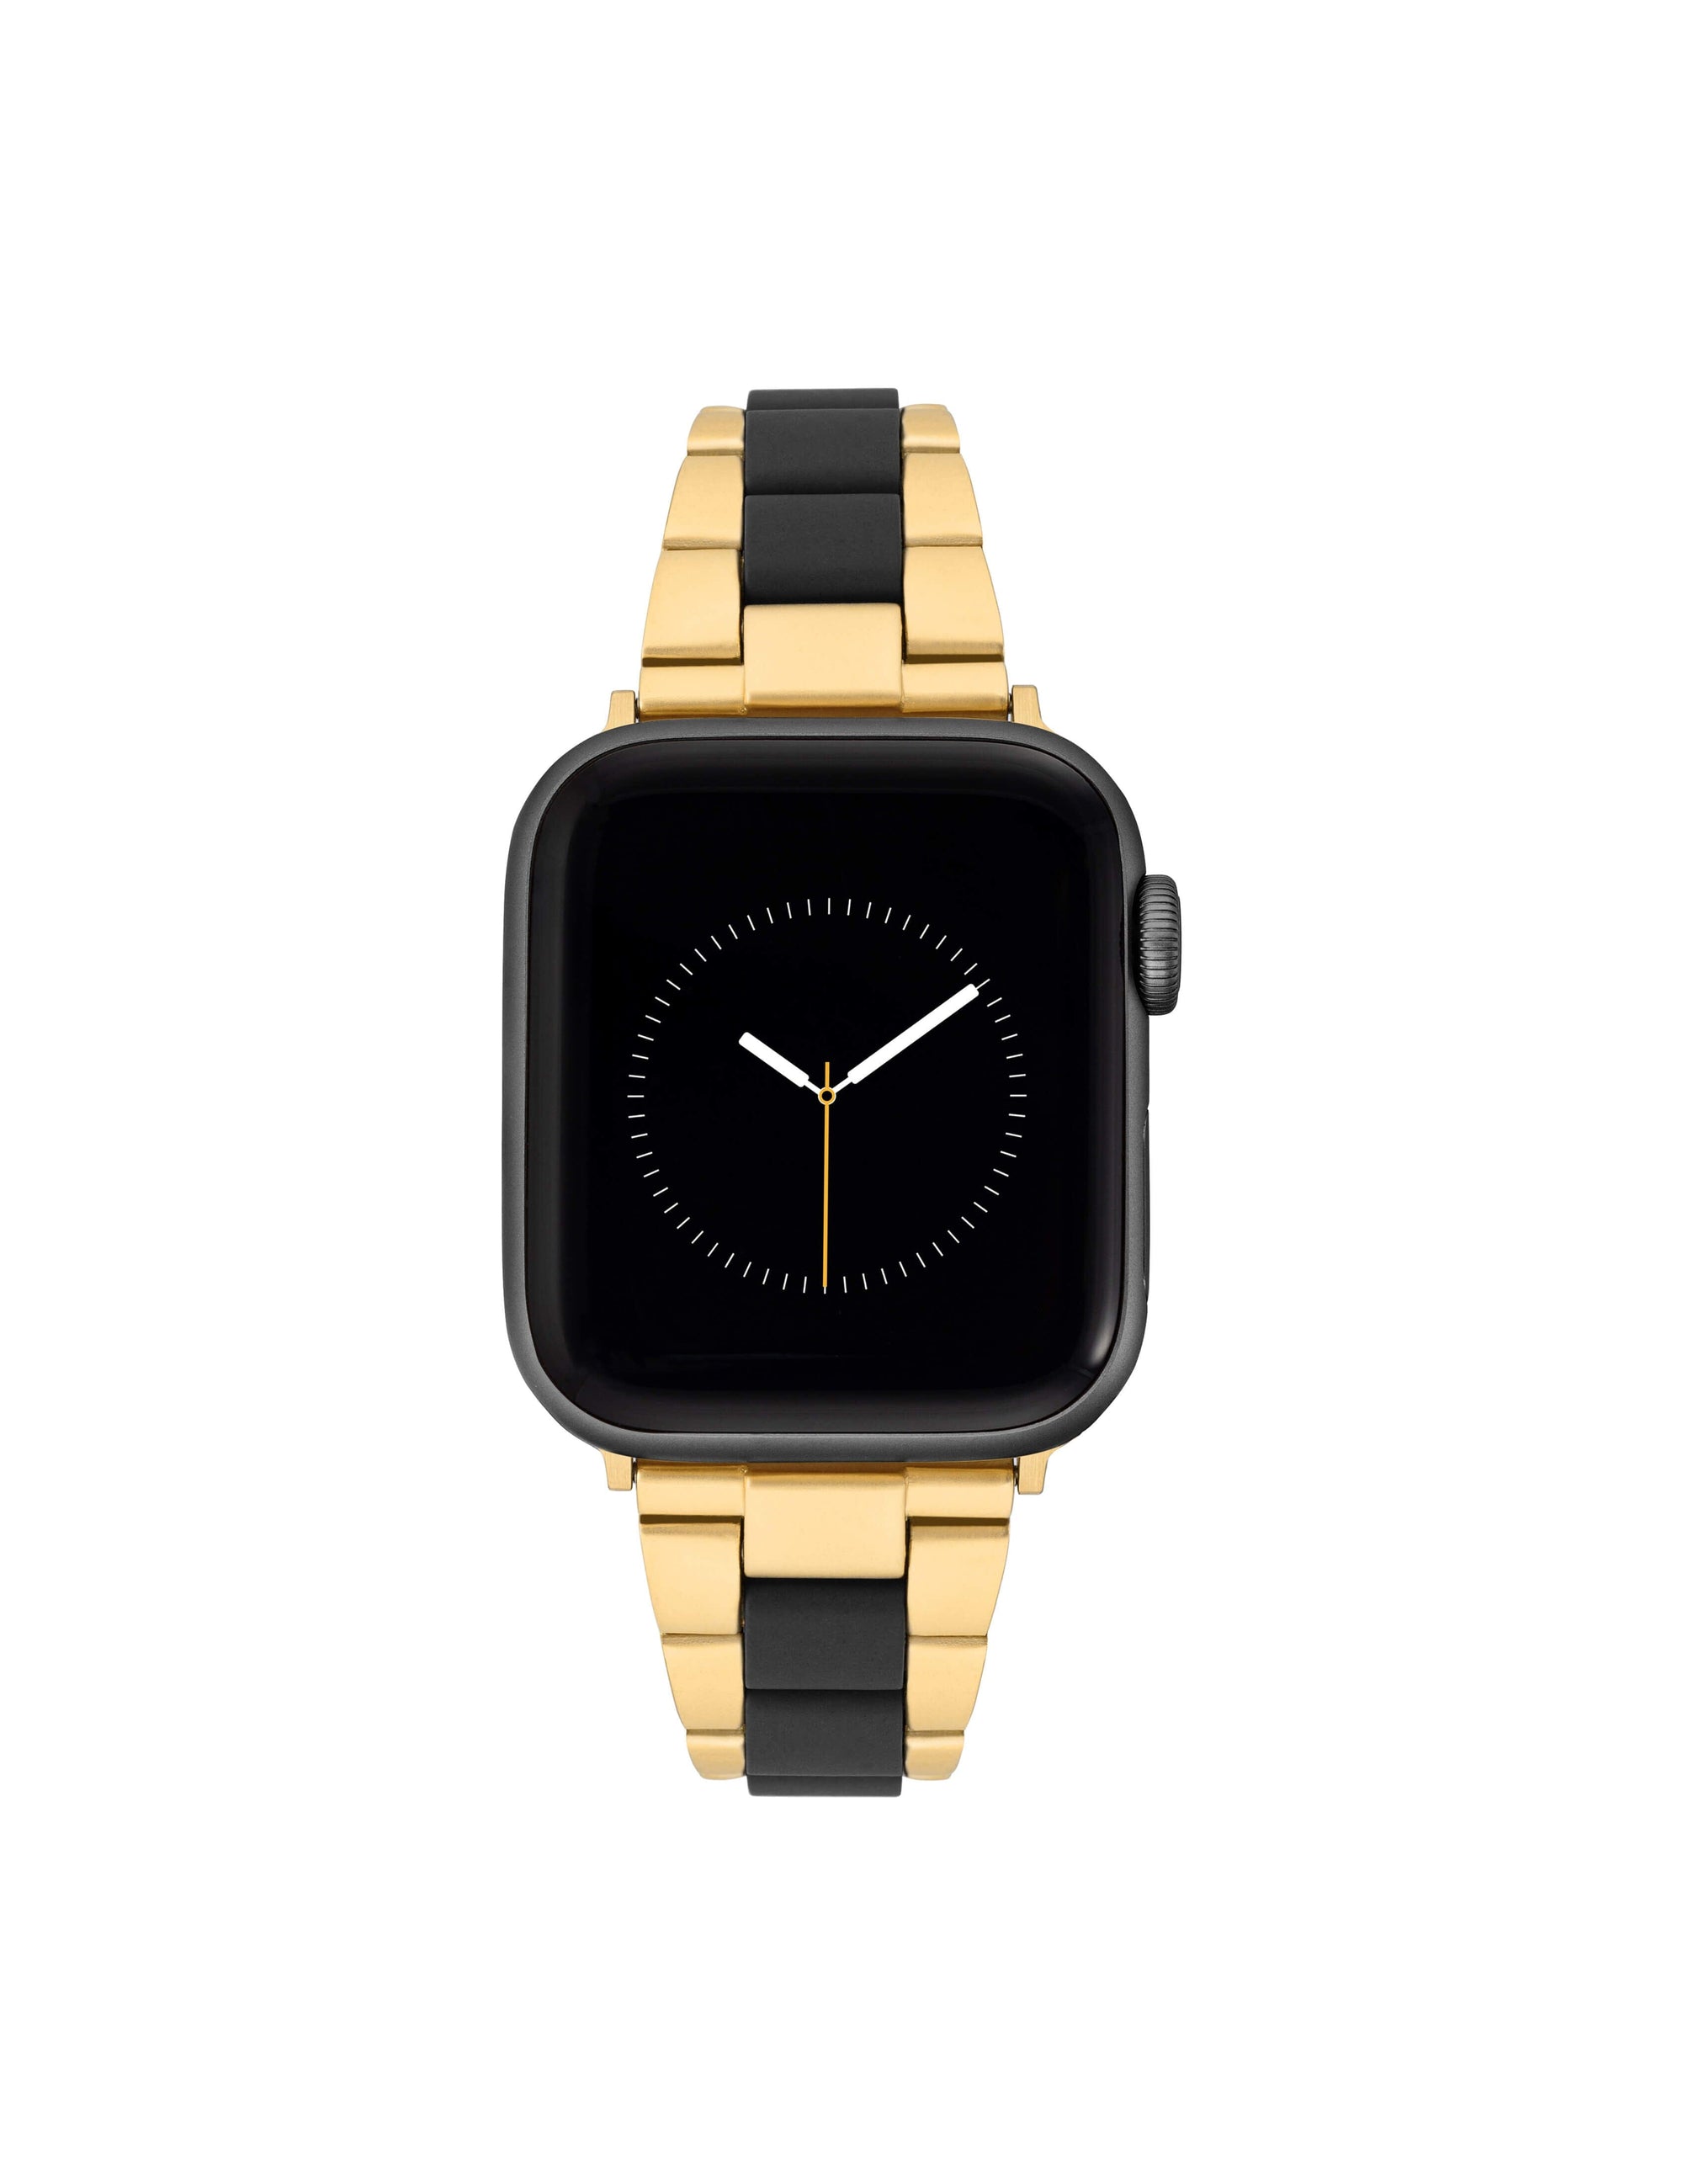 Elegant Gold Link Chain Wrap Bracelet Watch Band | Watches with bracelets  women, Women wrist watch, Apple watch bracelets